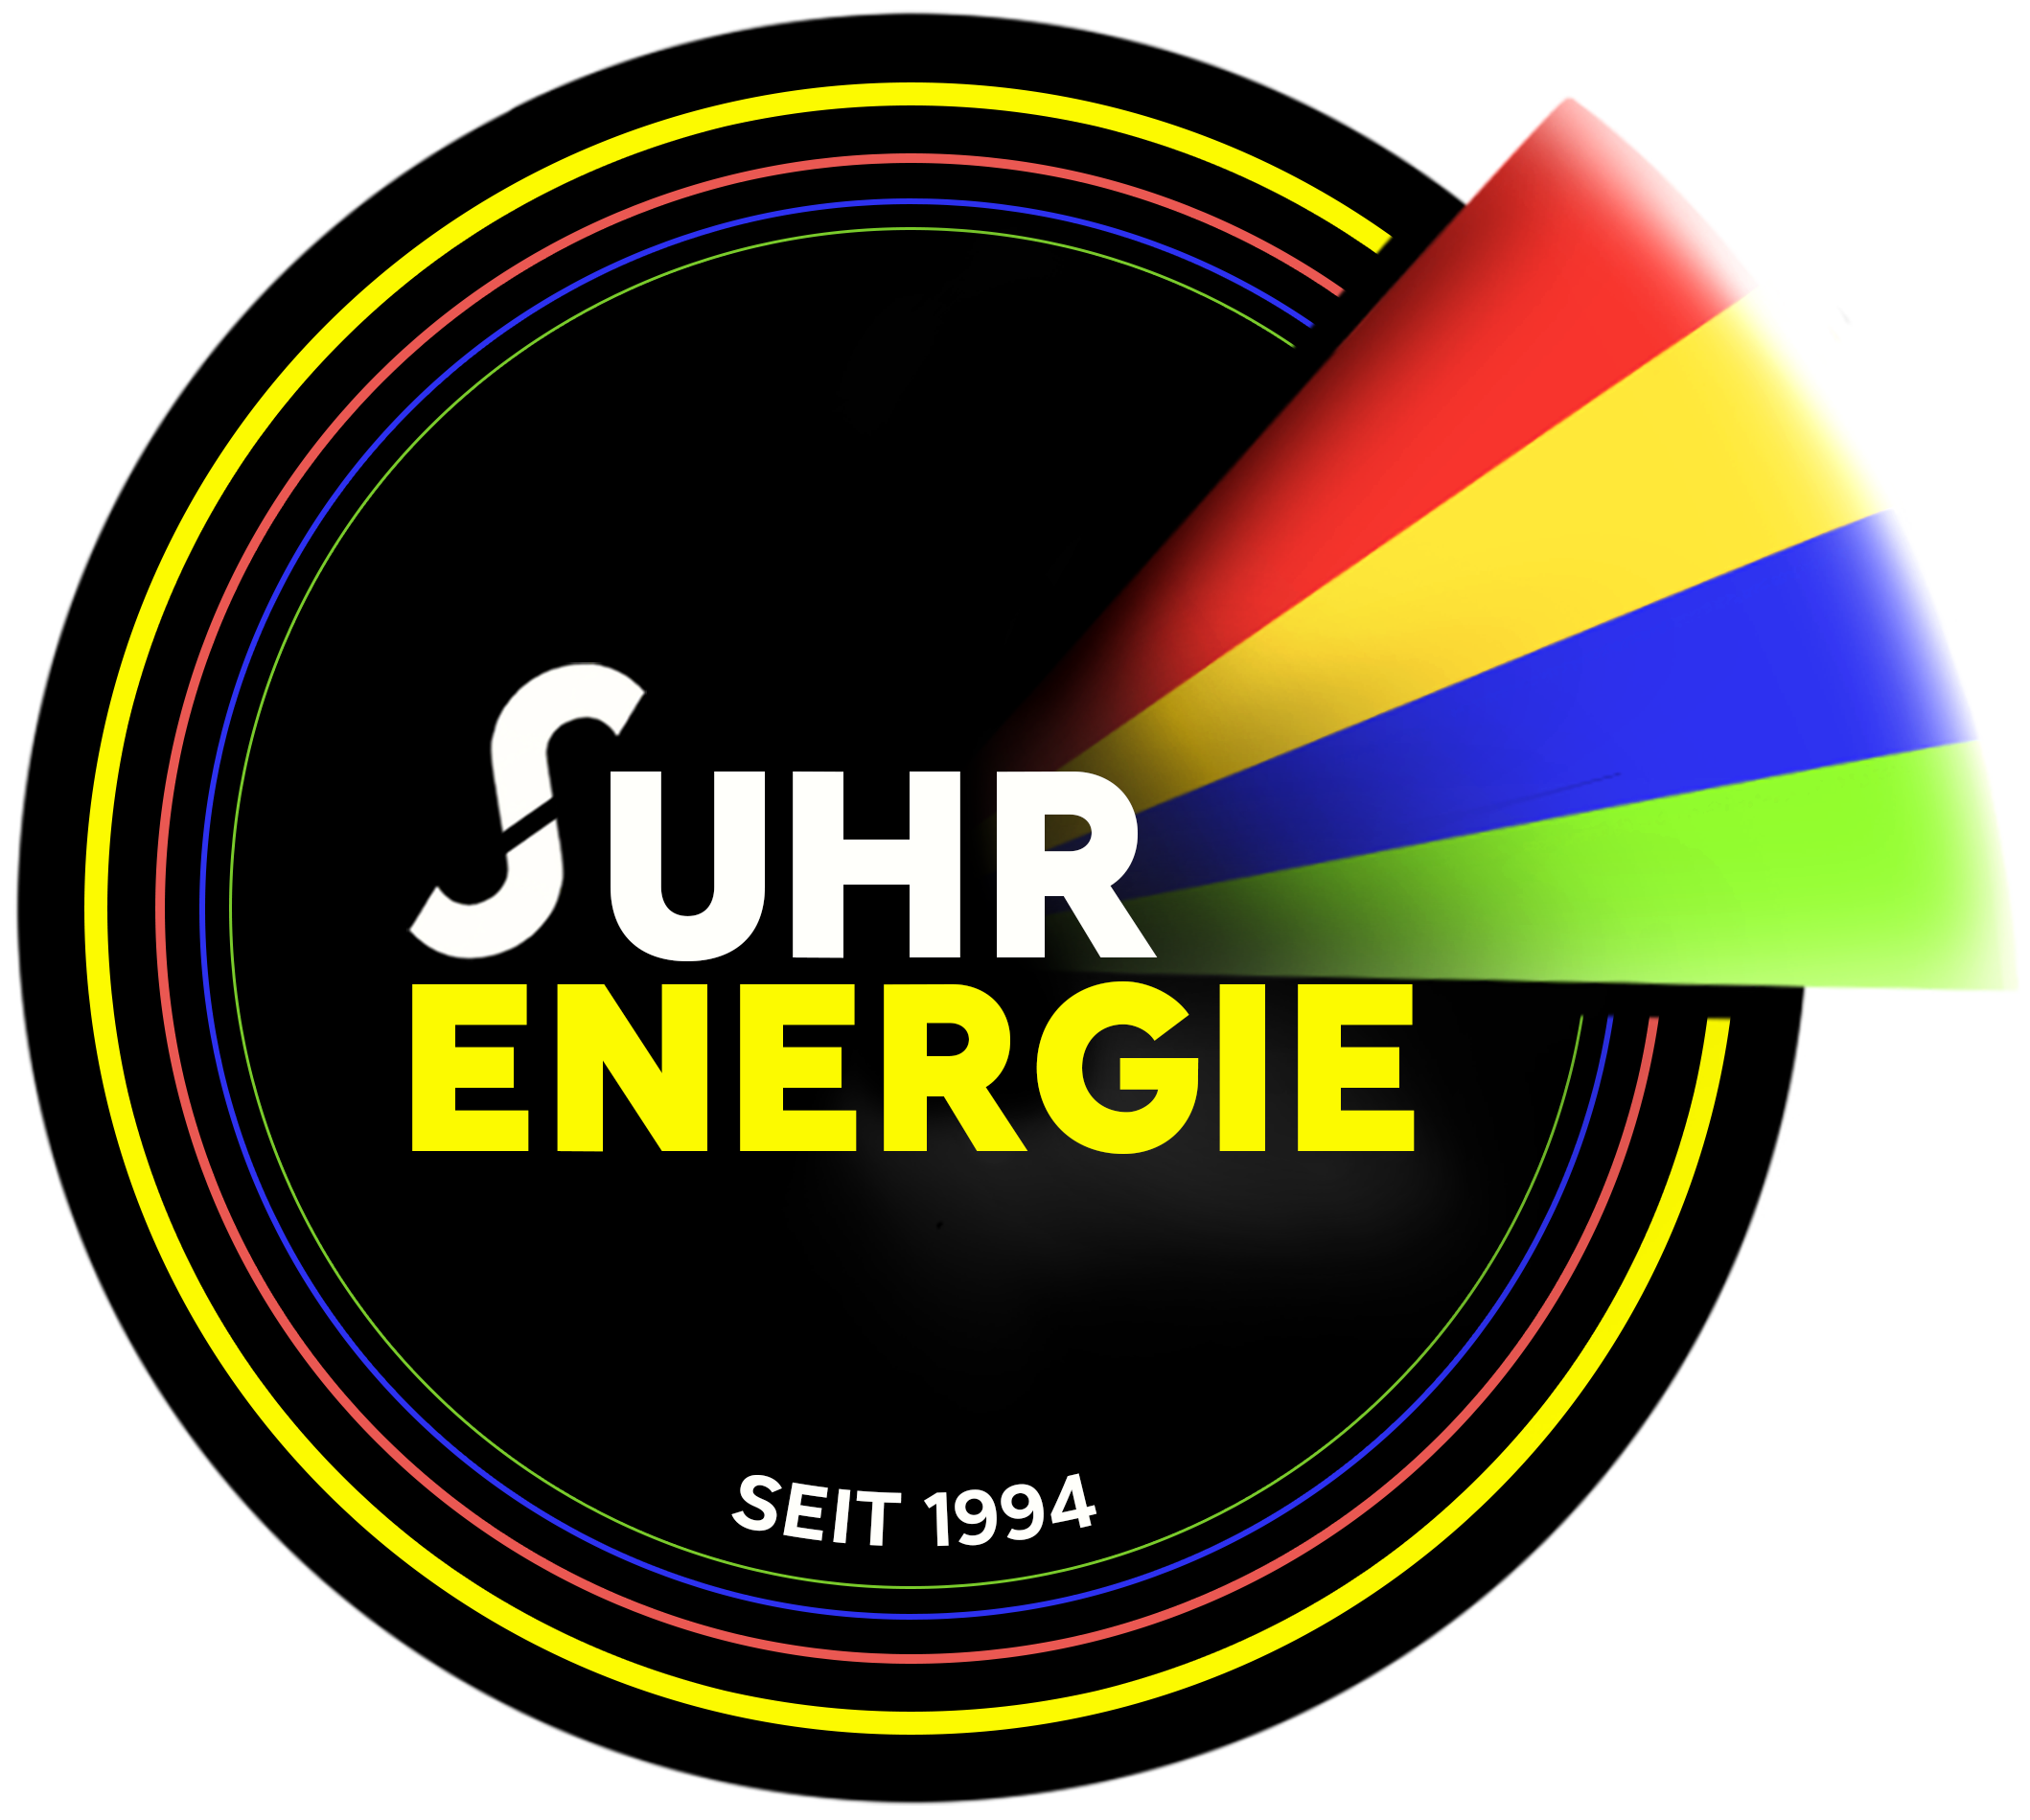 Suhr Energie - Energieberater Schornsteinfeger Hamburg